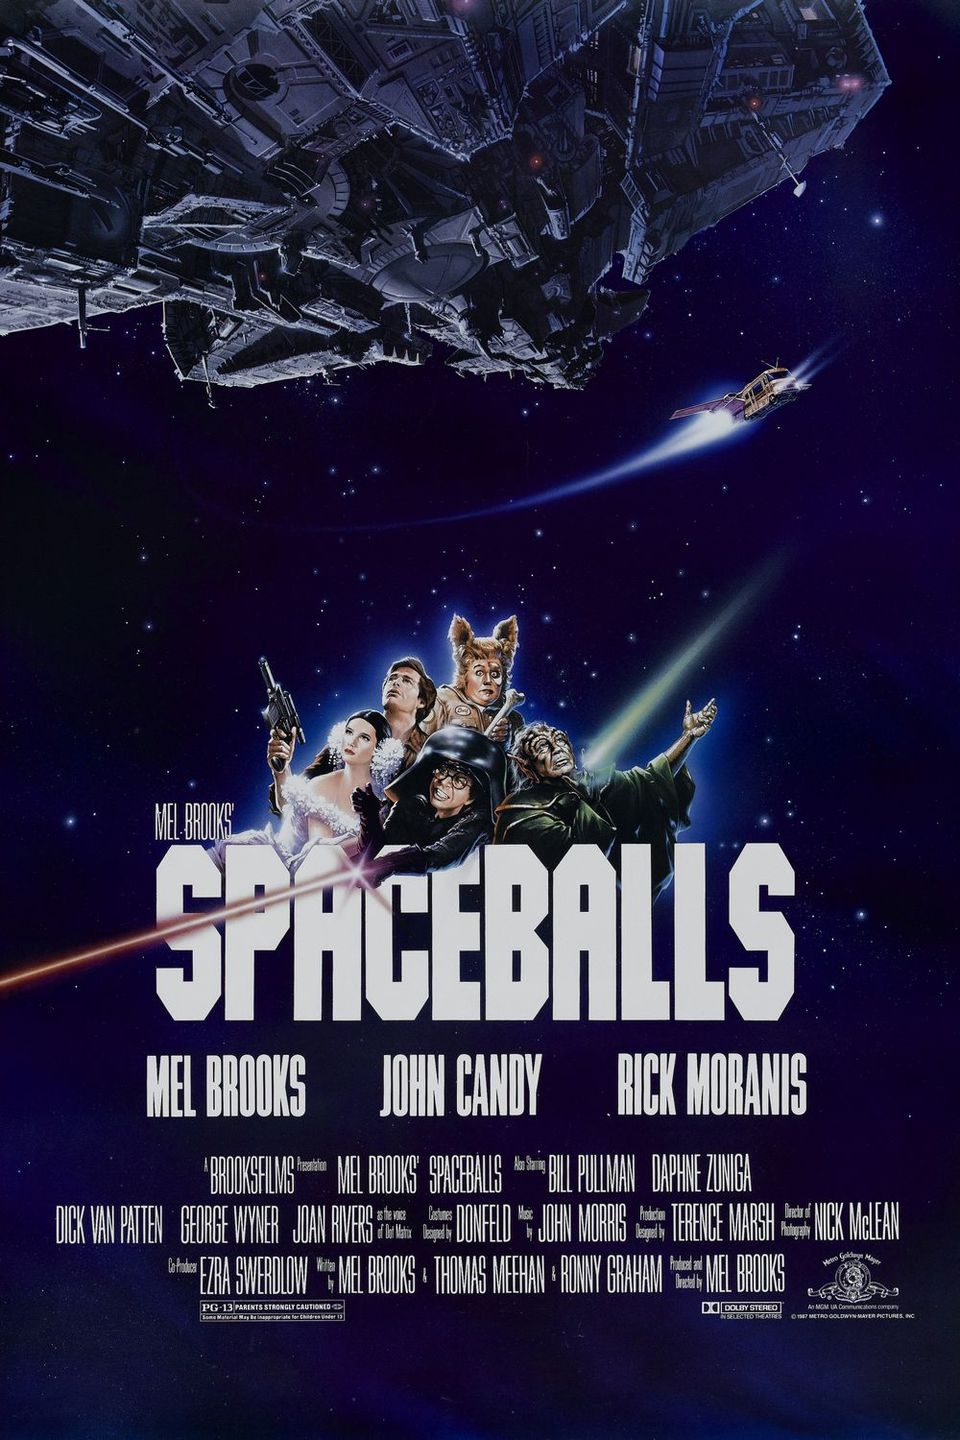 Estados Unidos poster for Spaceballs